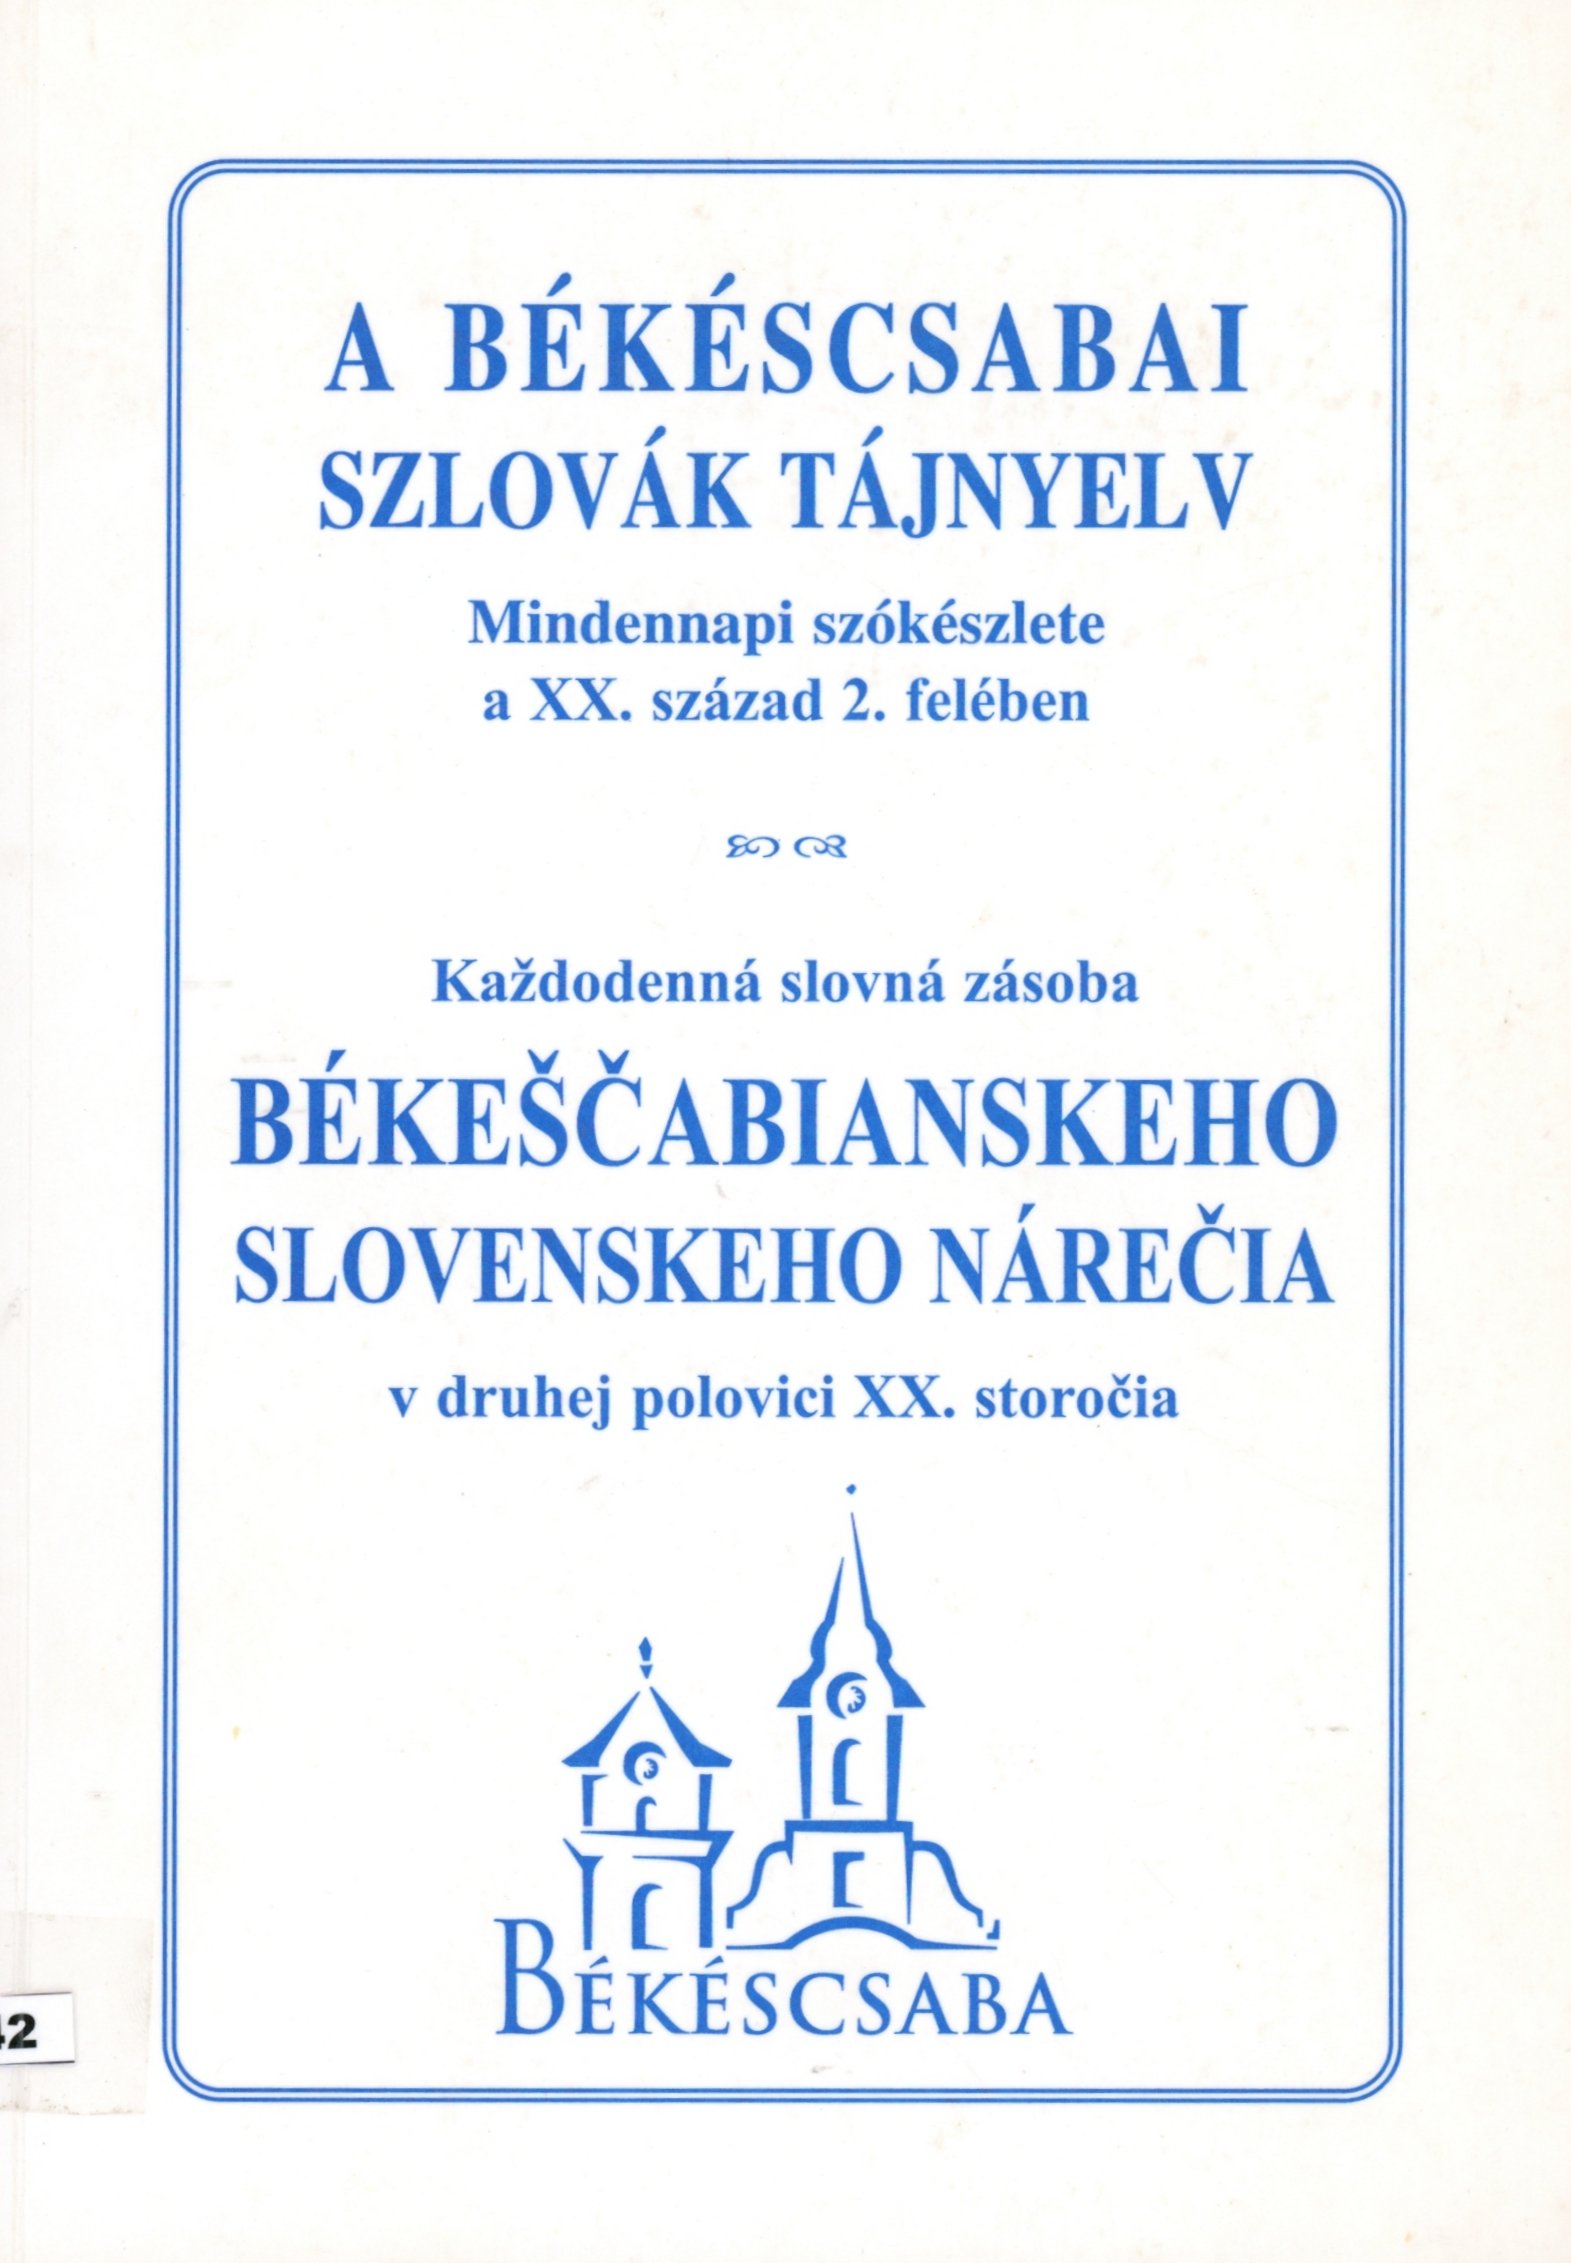 A Békéscsabai Szlovák Tájnyelv (Erkel Ferenc Múzeum és Könyvtár, Gyula CC BY-NC-SA)